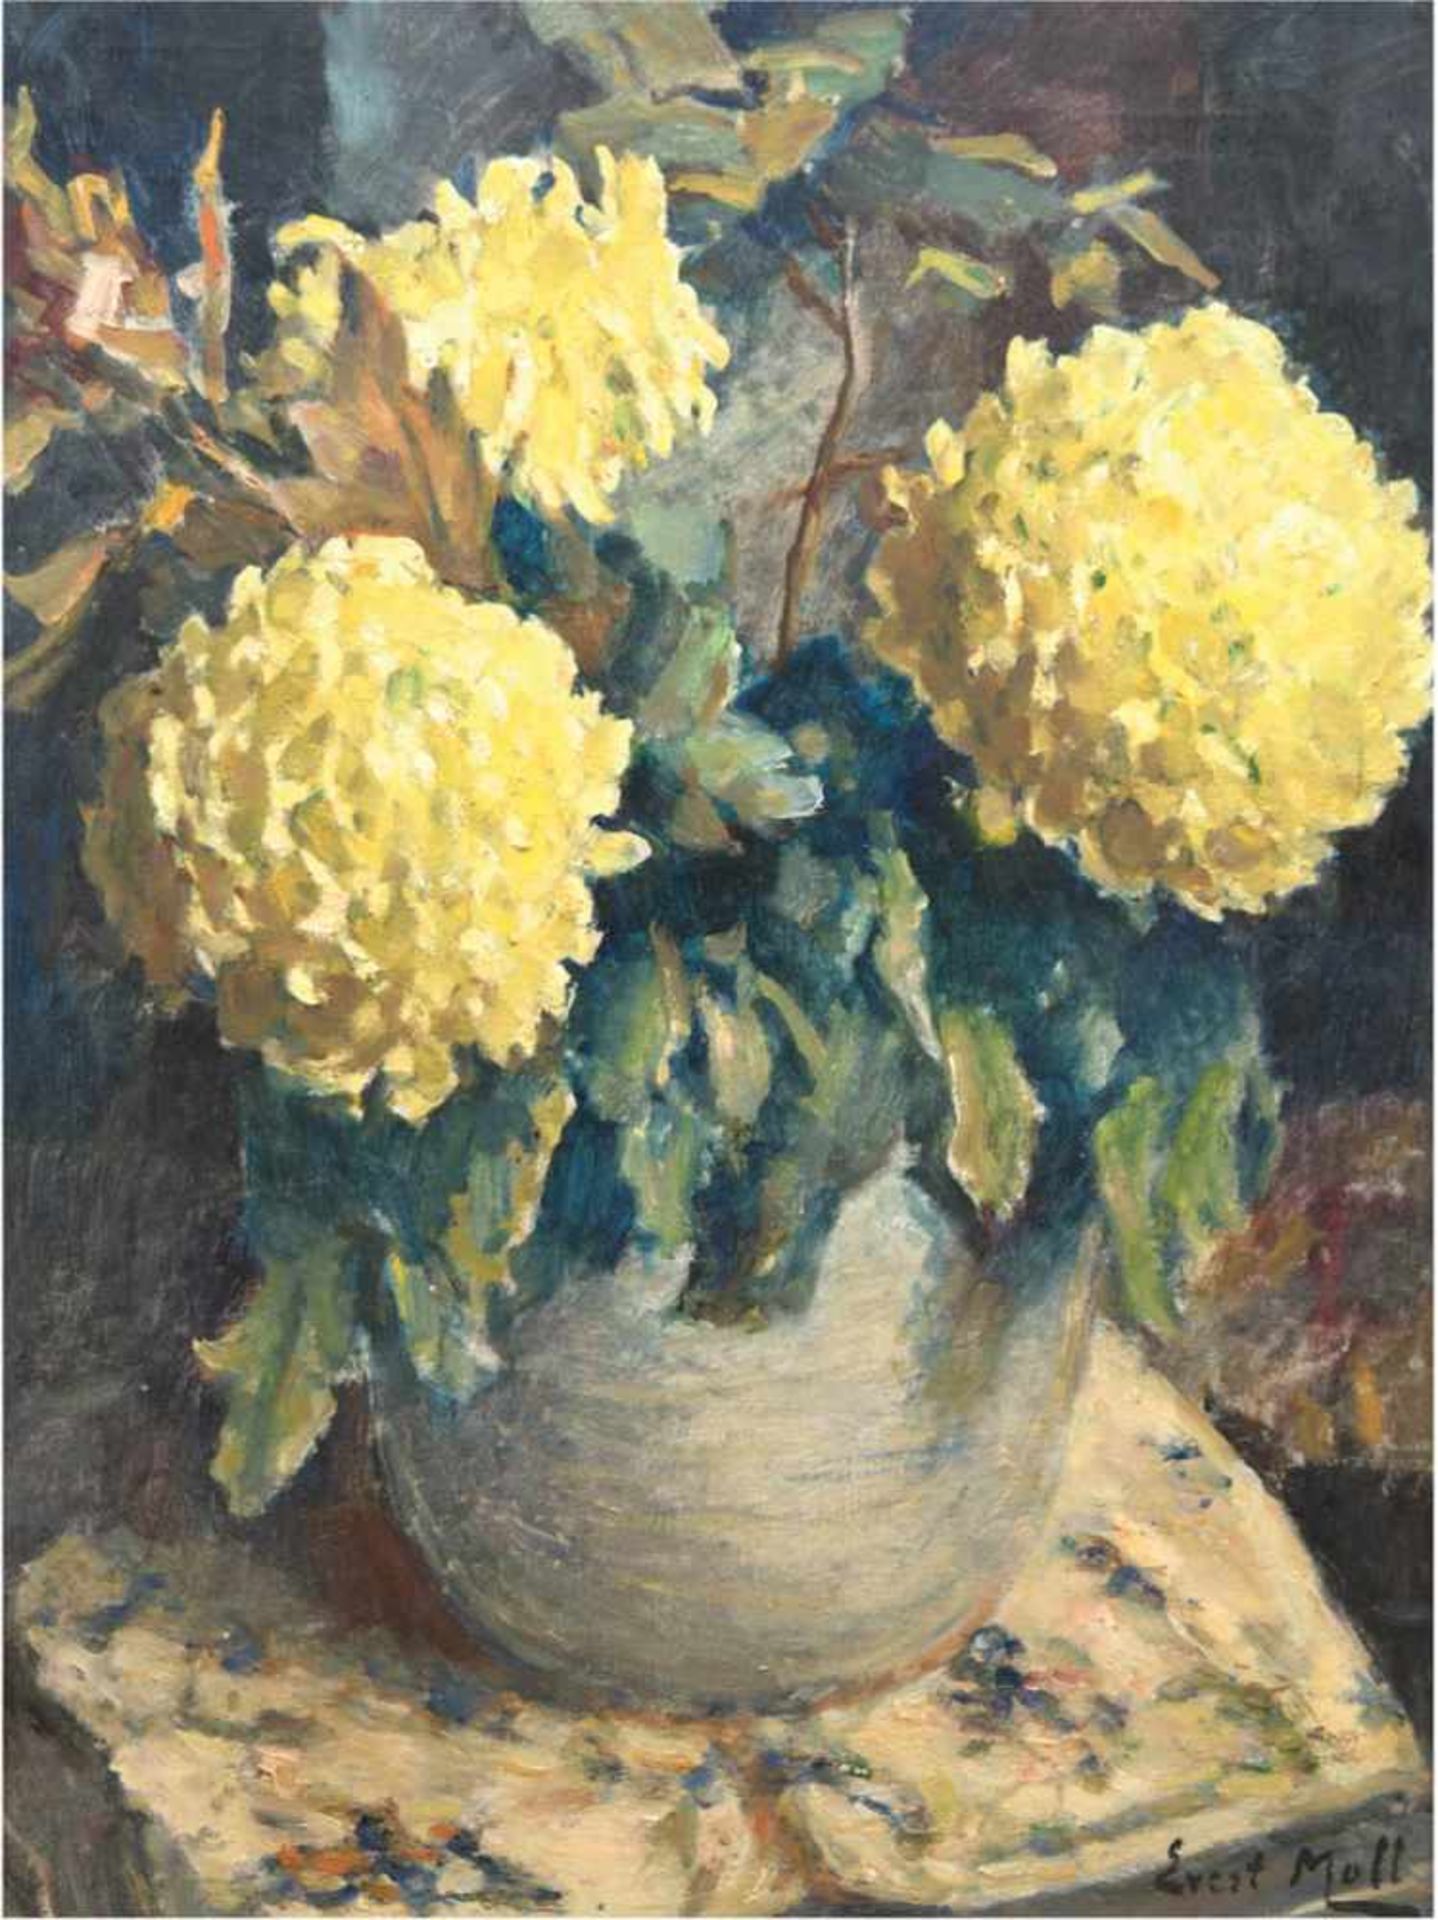 Moll, Evert (1878 Voorburg-1955 Den Haag) "Stilleben mit Chrysanthemen", Öl/Lw., sign.u.r., 81x61,